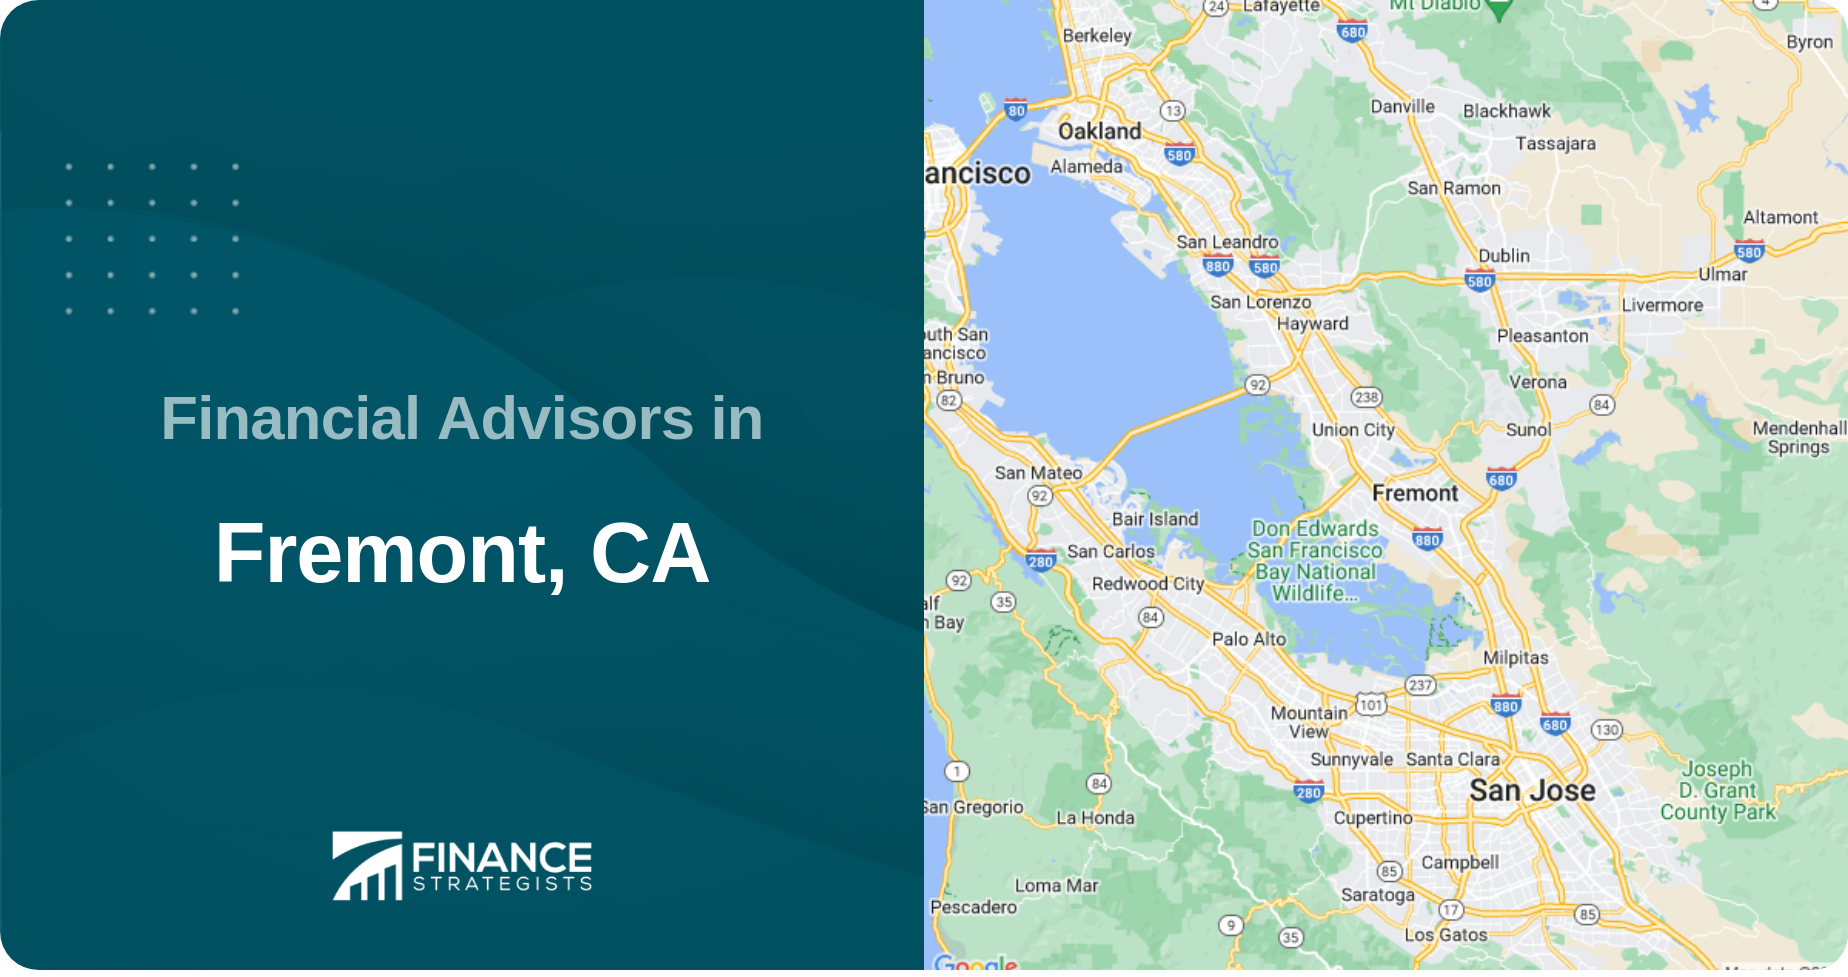 Financial Advisors in Fremont, CA